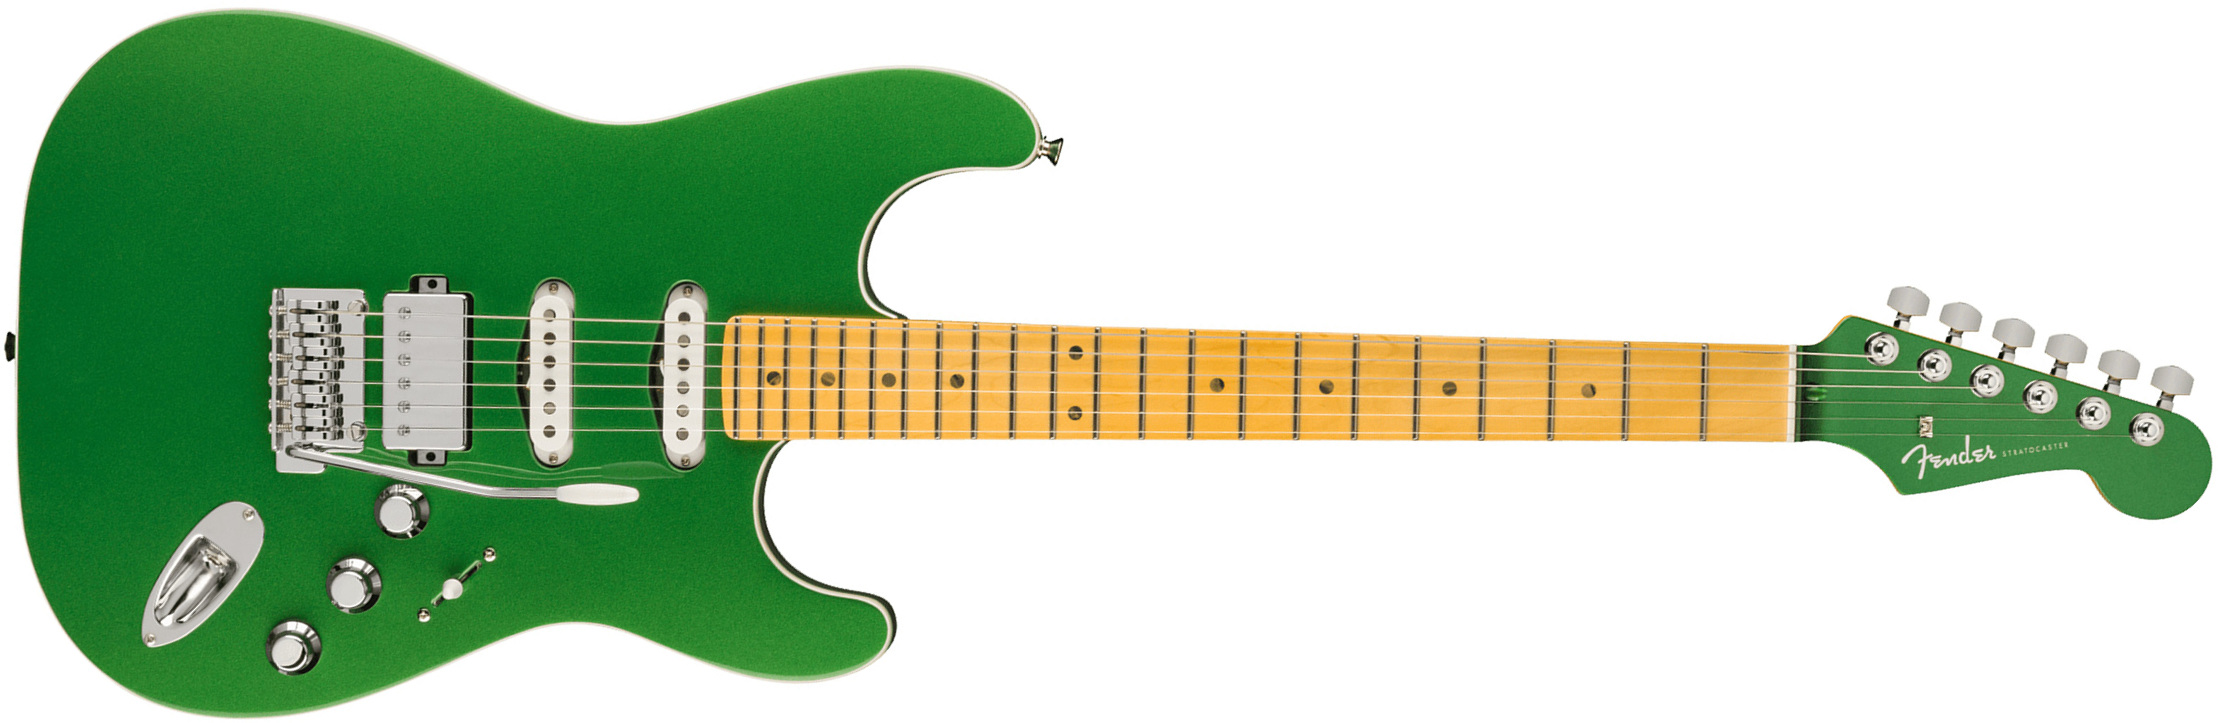 Fender Strat Aerodyne Special Jap Trem Hss Mn - Speed Green Metallic - Elektrische gitaar in Str-vorm - Main picture